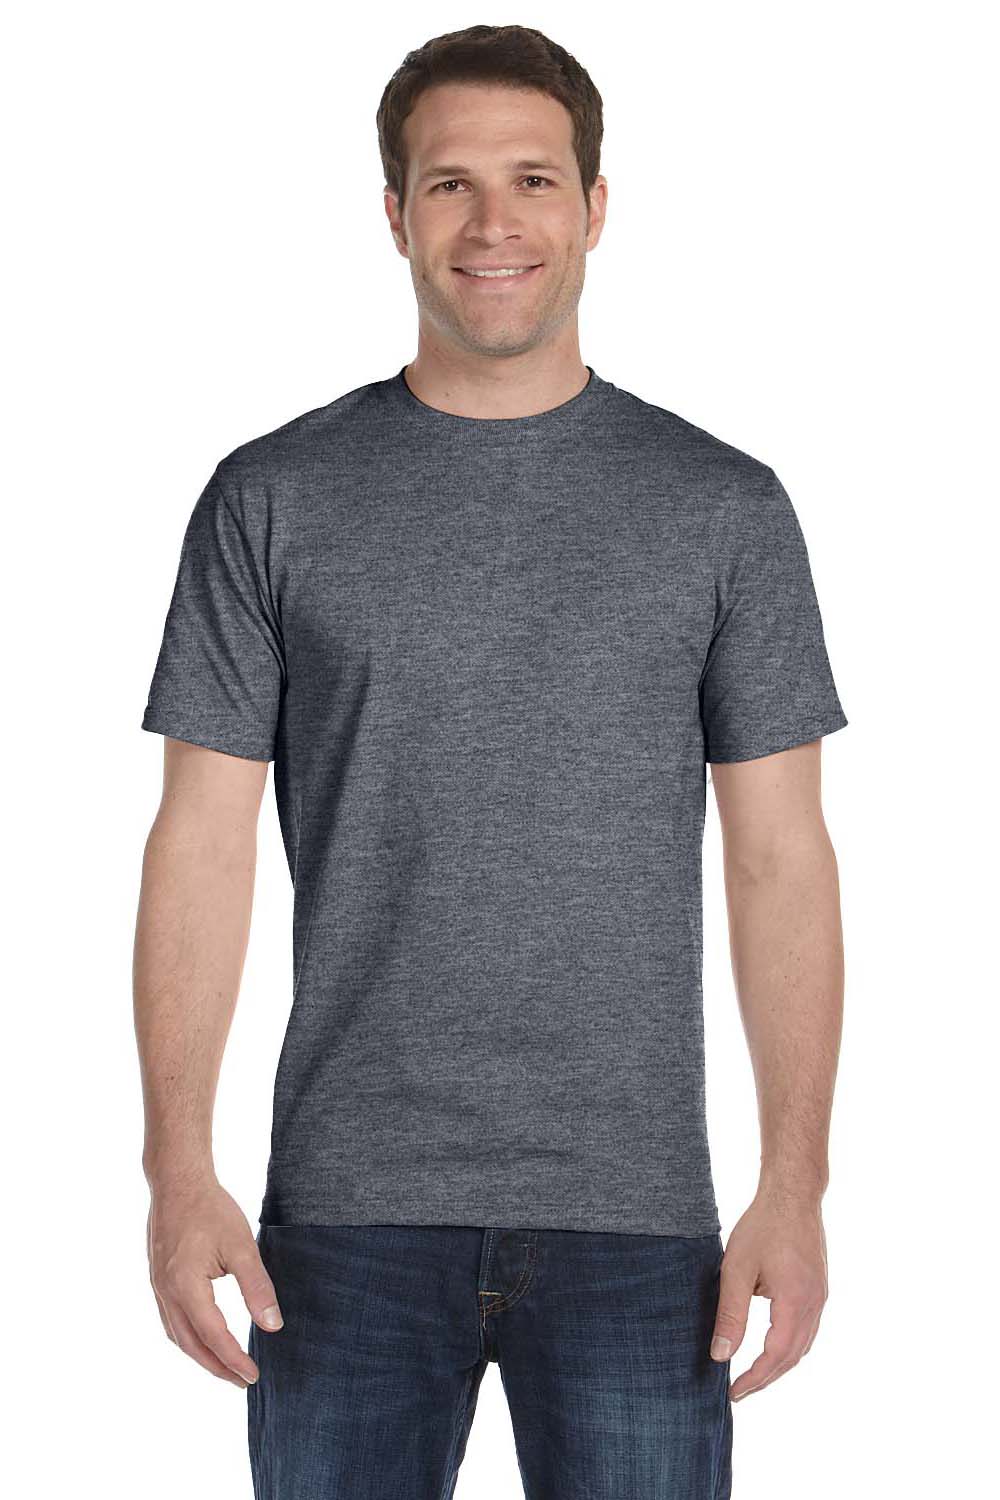 gray hanes t shirts